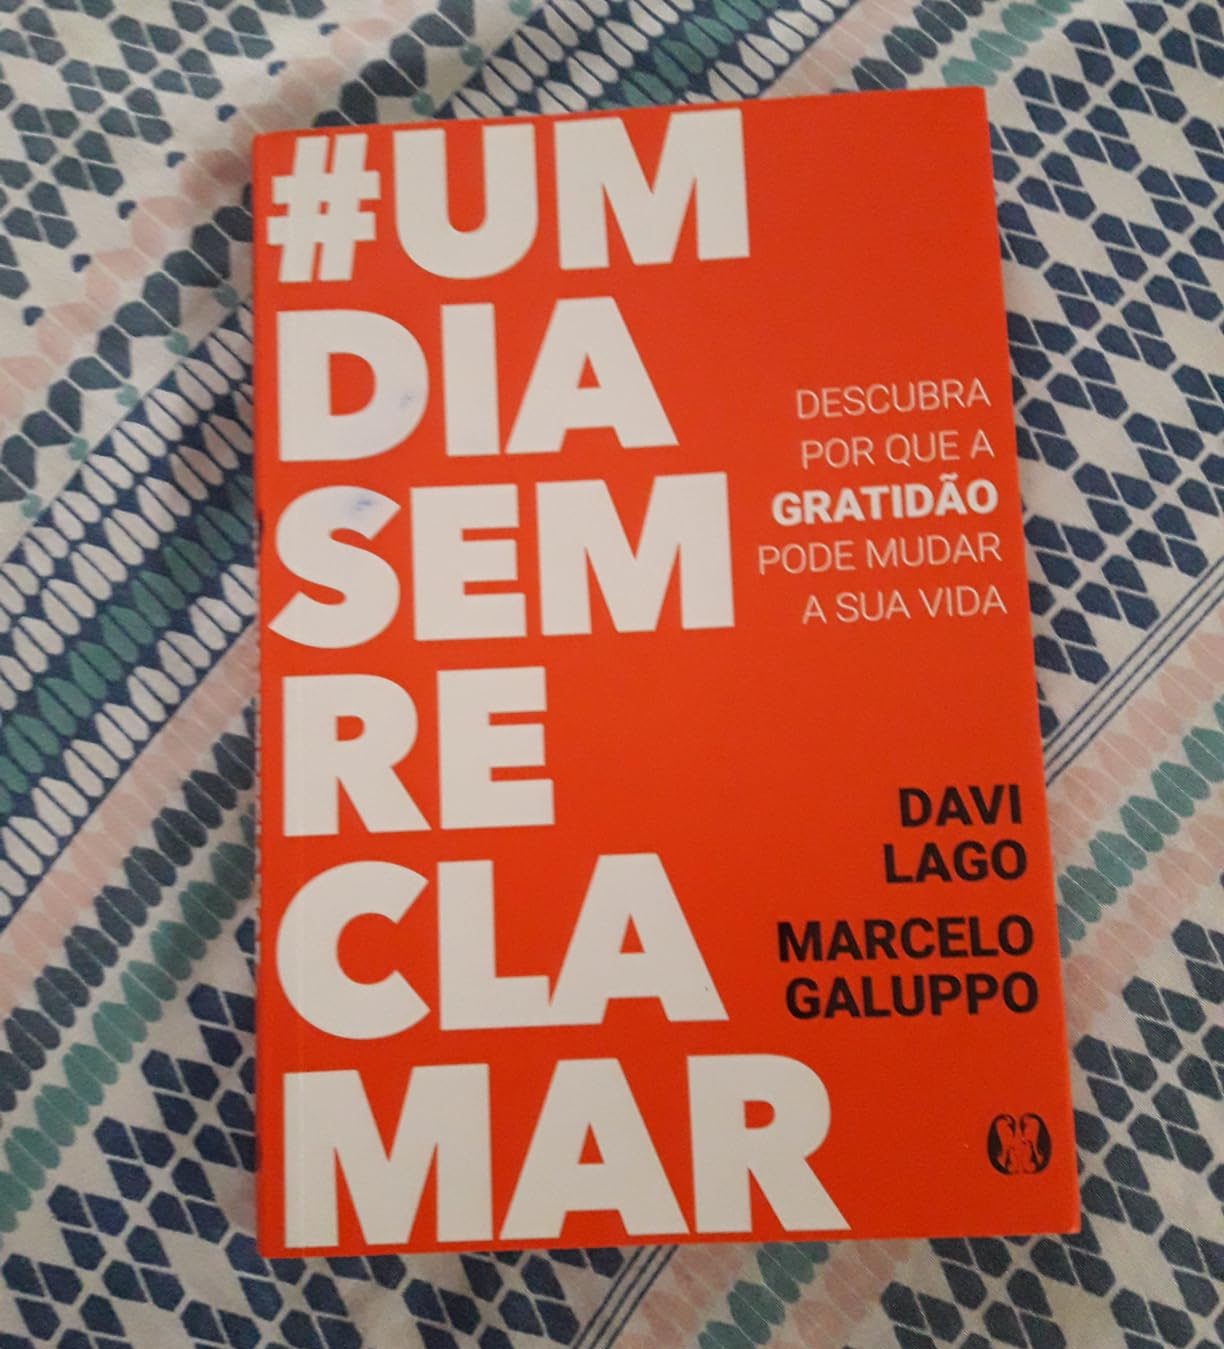 #UmDiaSemReclamar: descubra por que a gratidão pode mudar a sua vida - Davi Lago e Marcelo Galuppo